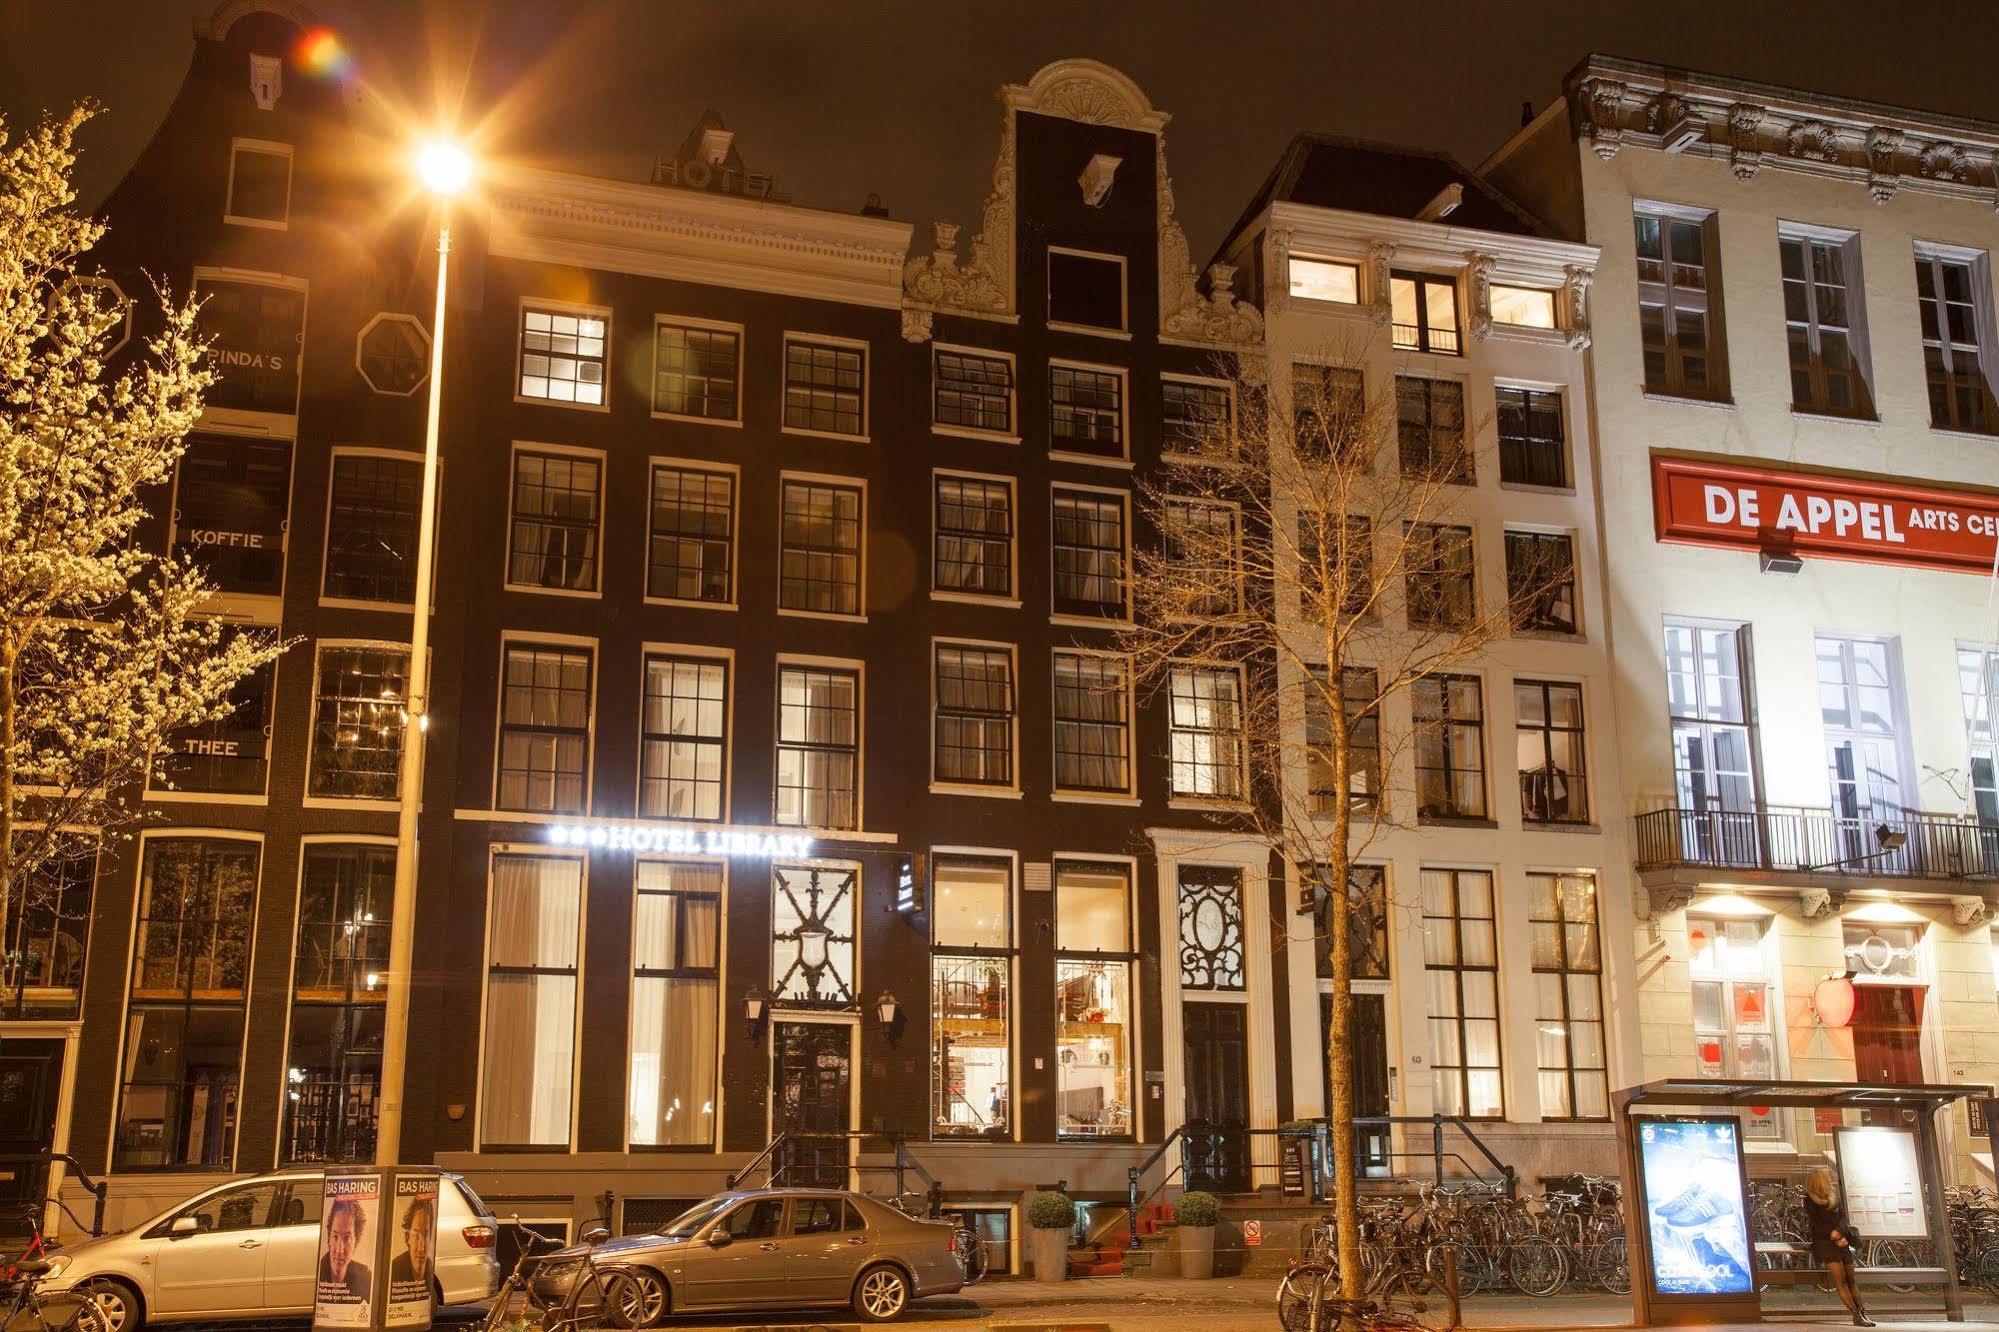 Hotel Library Amsterdam Bagian luar foto